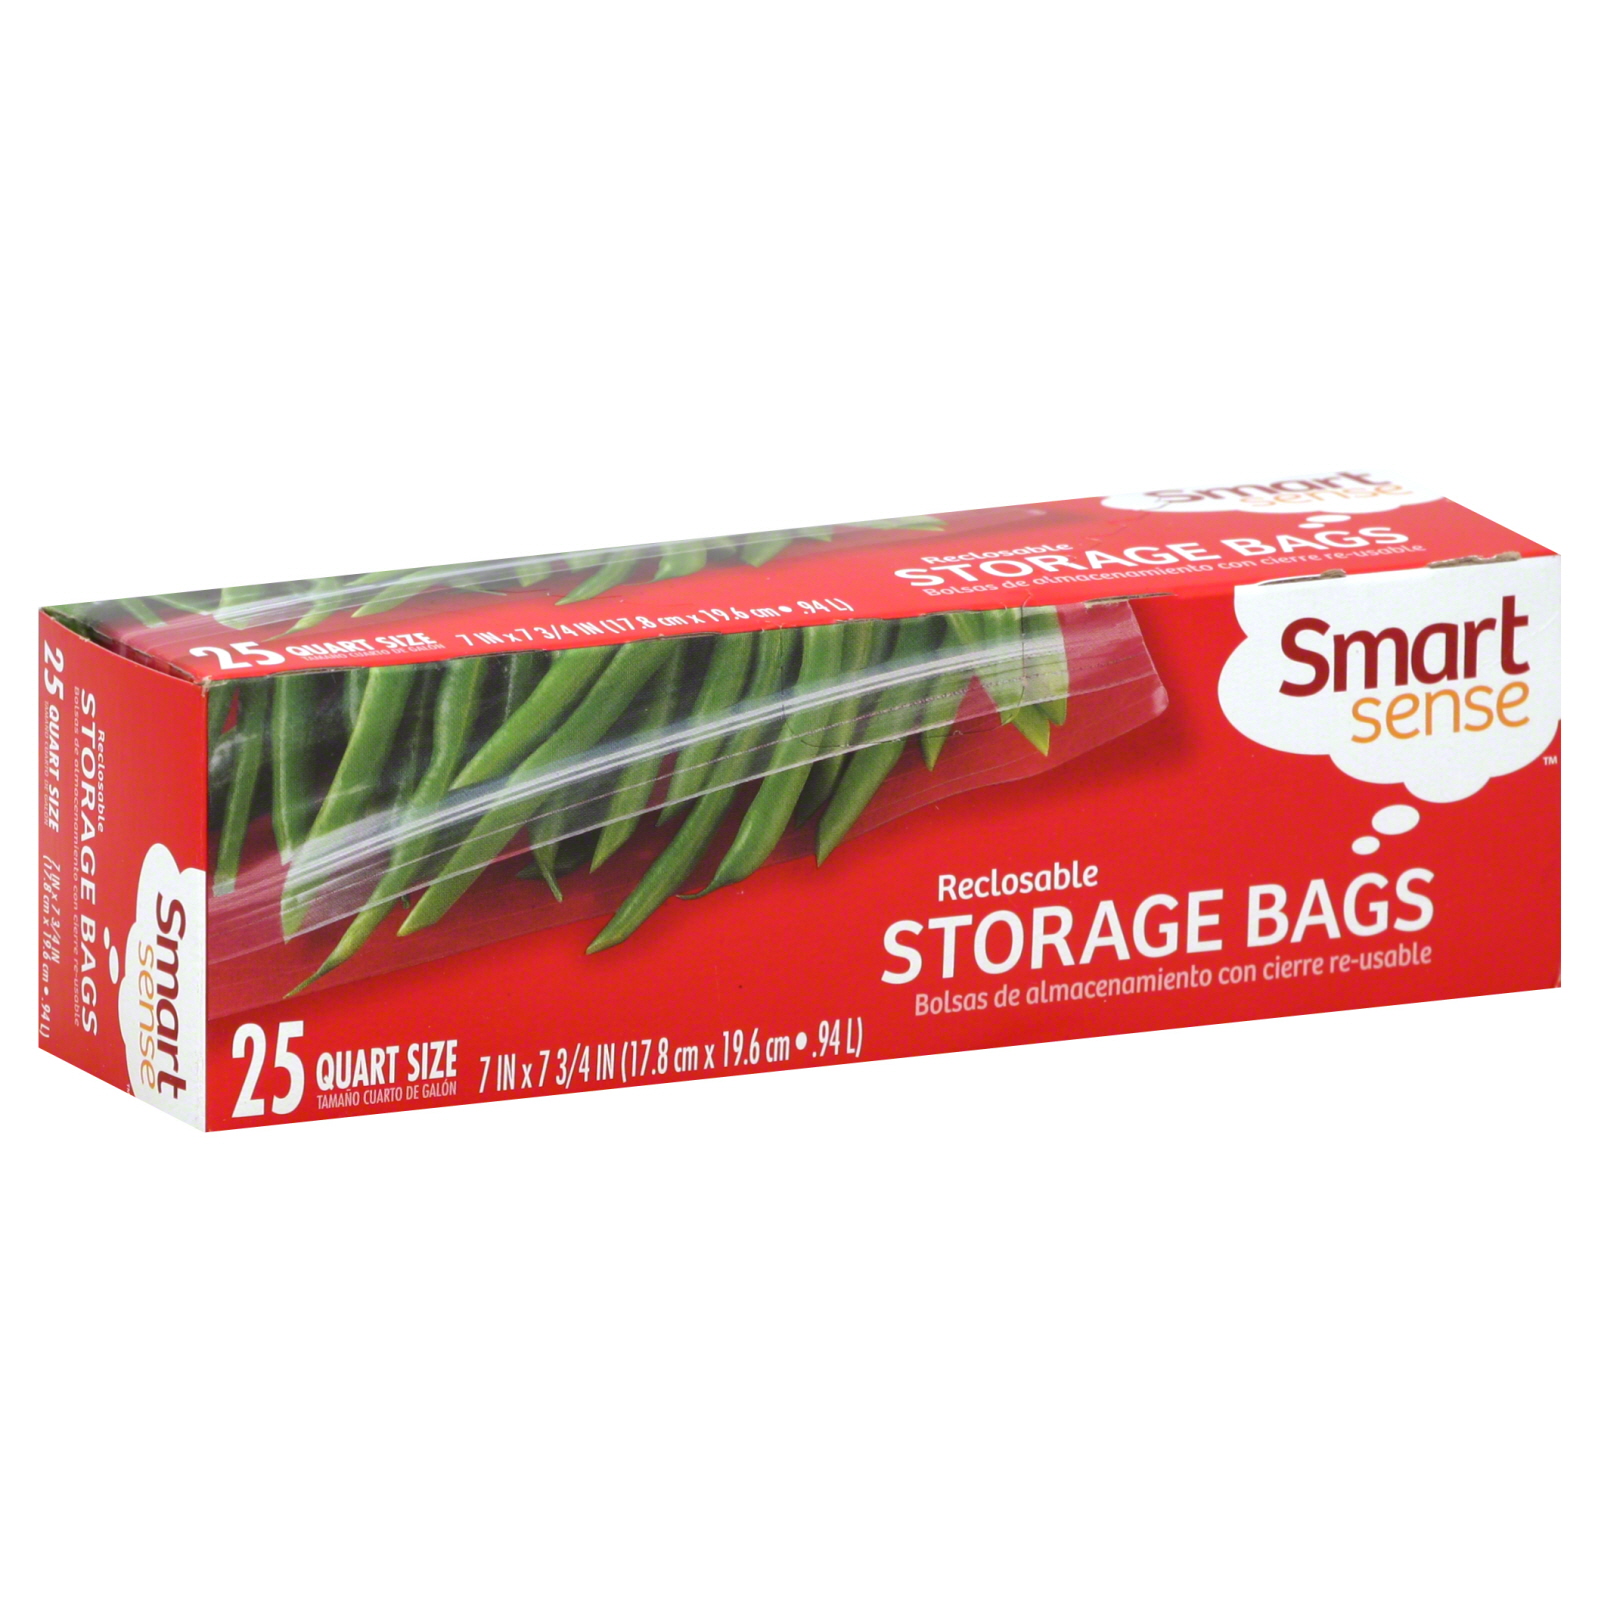 Smart Sense Reclosable Storage Bags 25 ct.